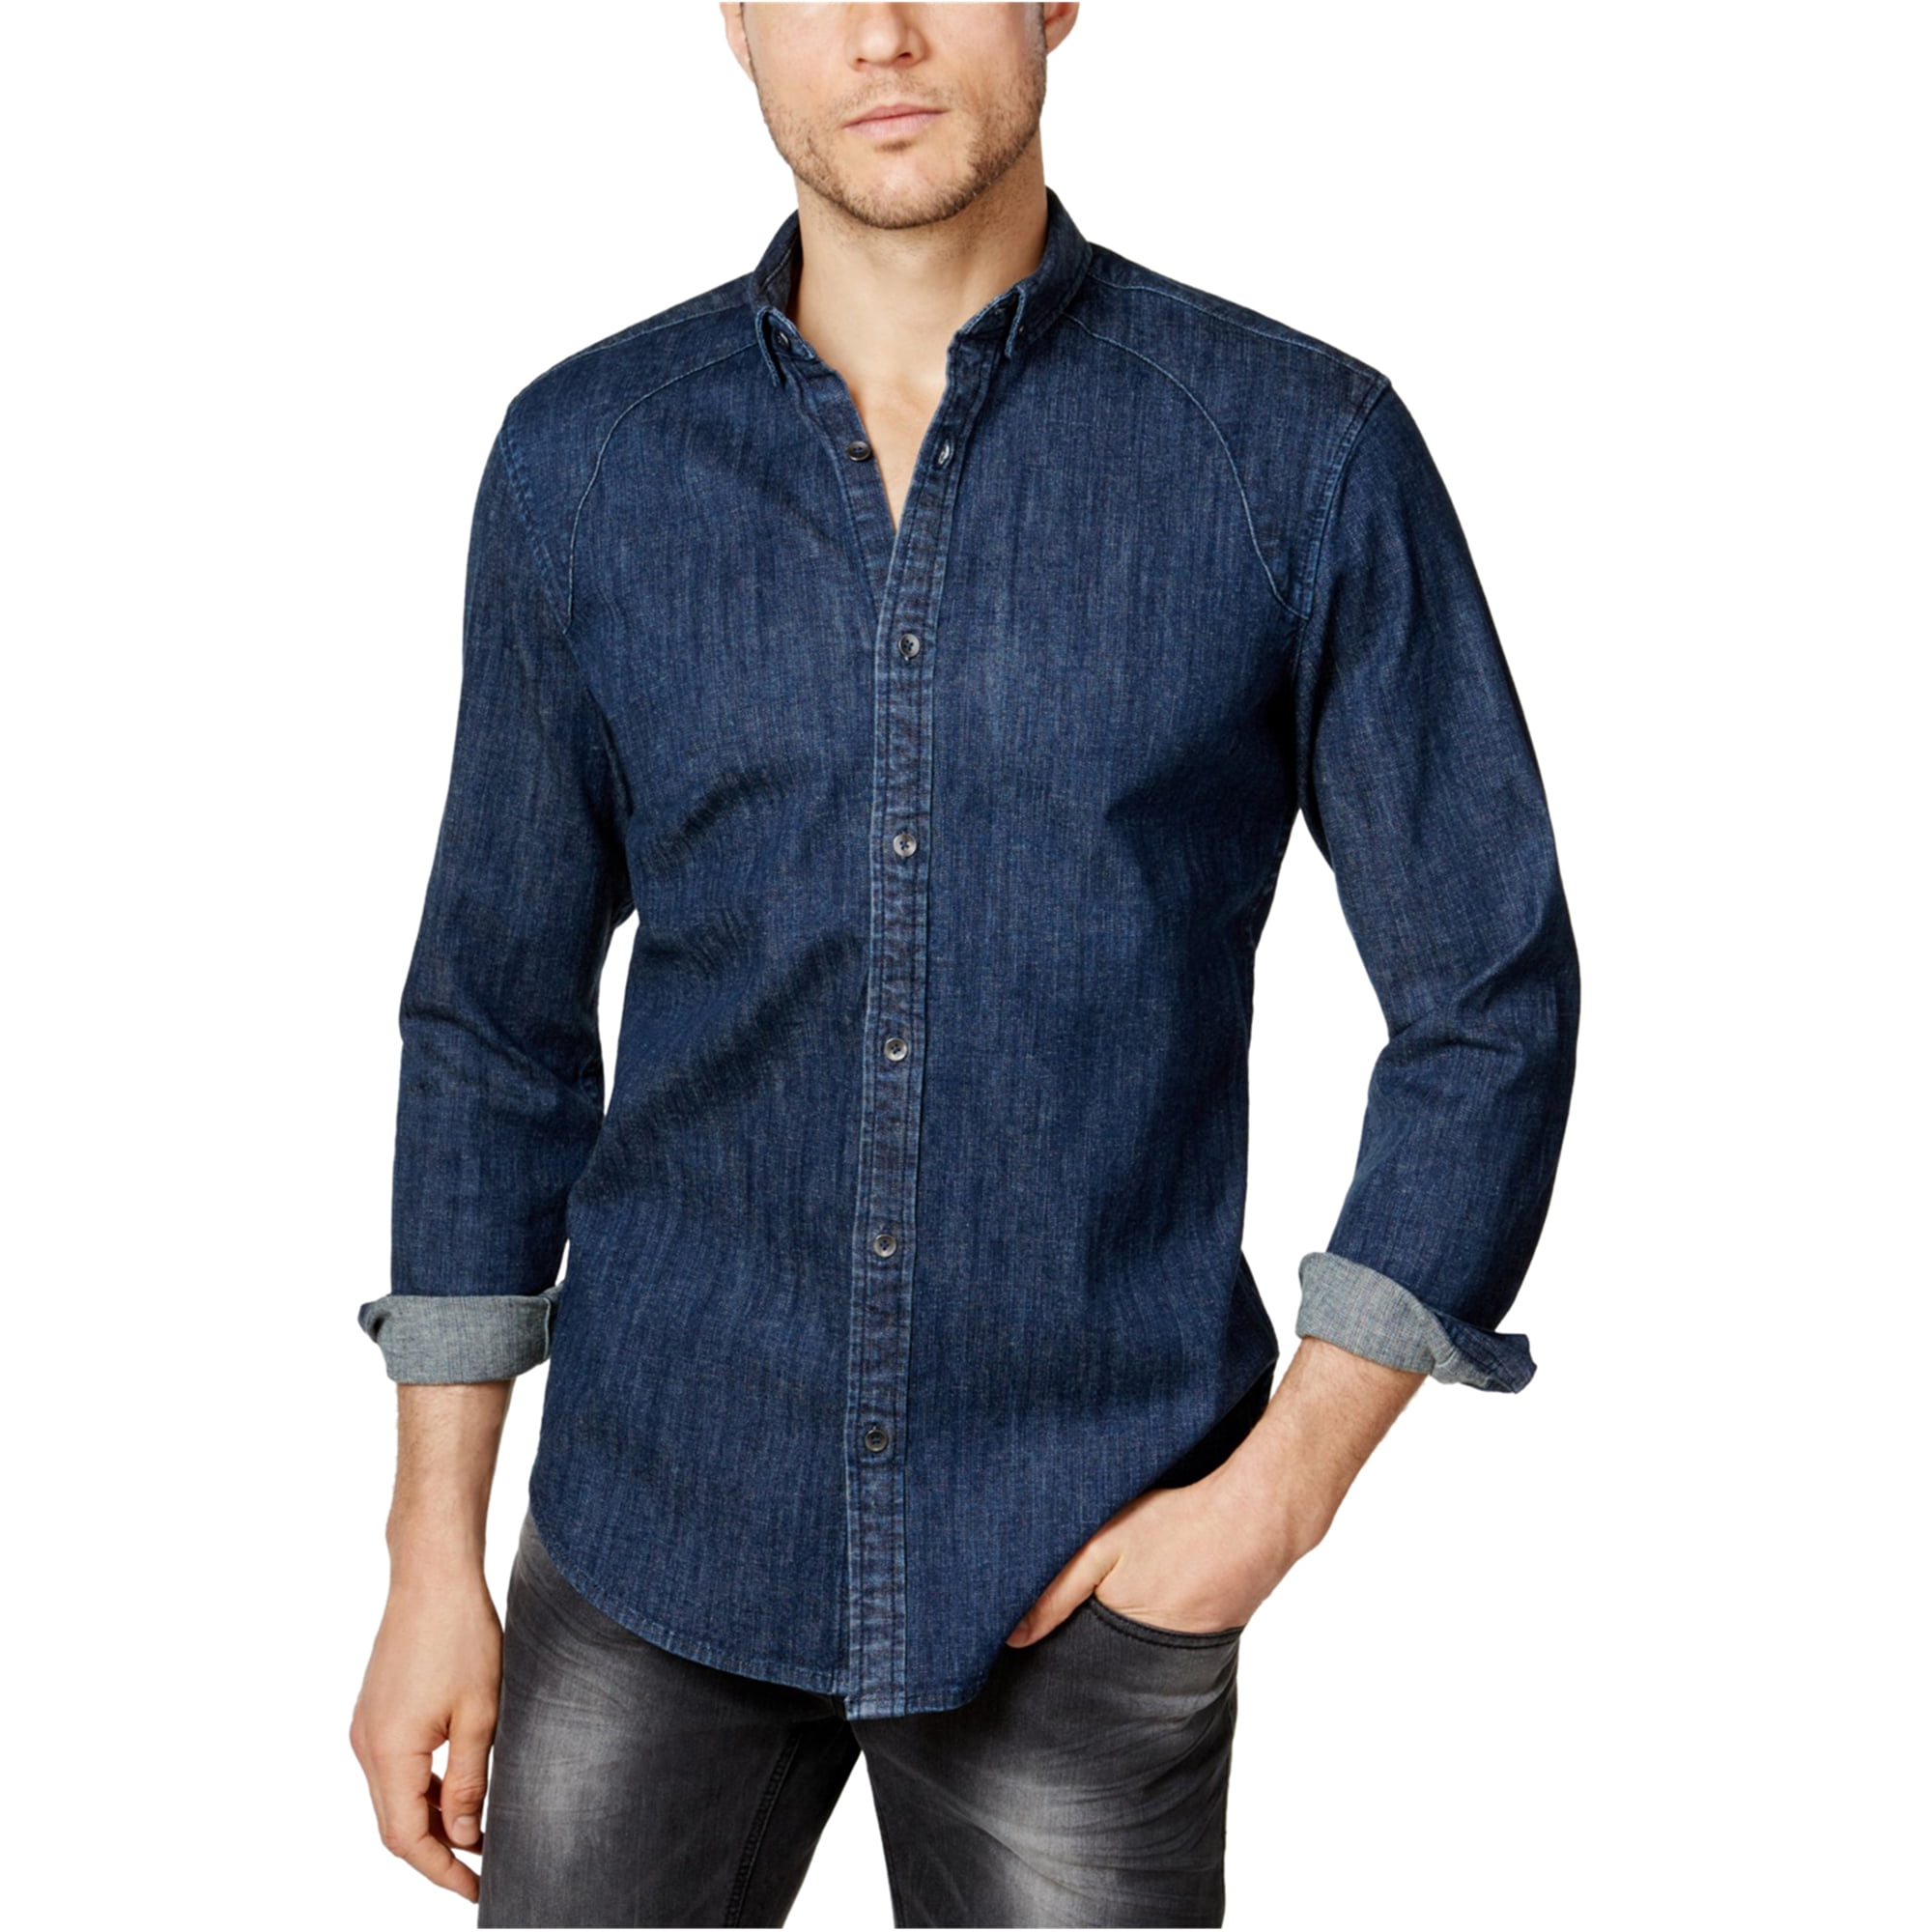 I-N-C Mens Denim Button Up Shirt, Blue, Small - Walmart.com